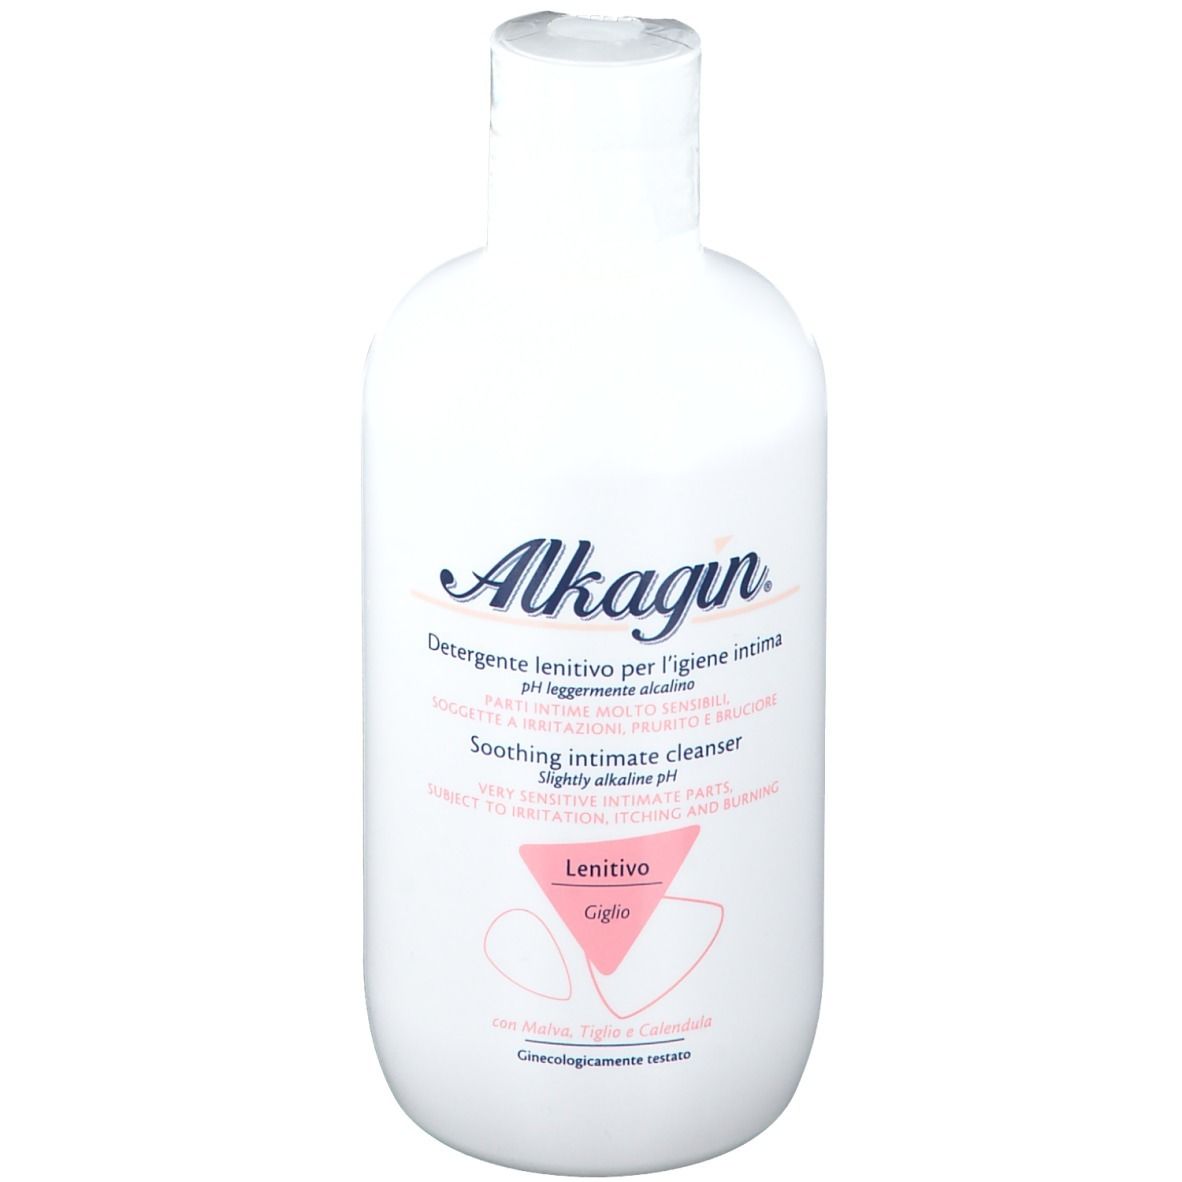 Alkagin® Detergente intimo